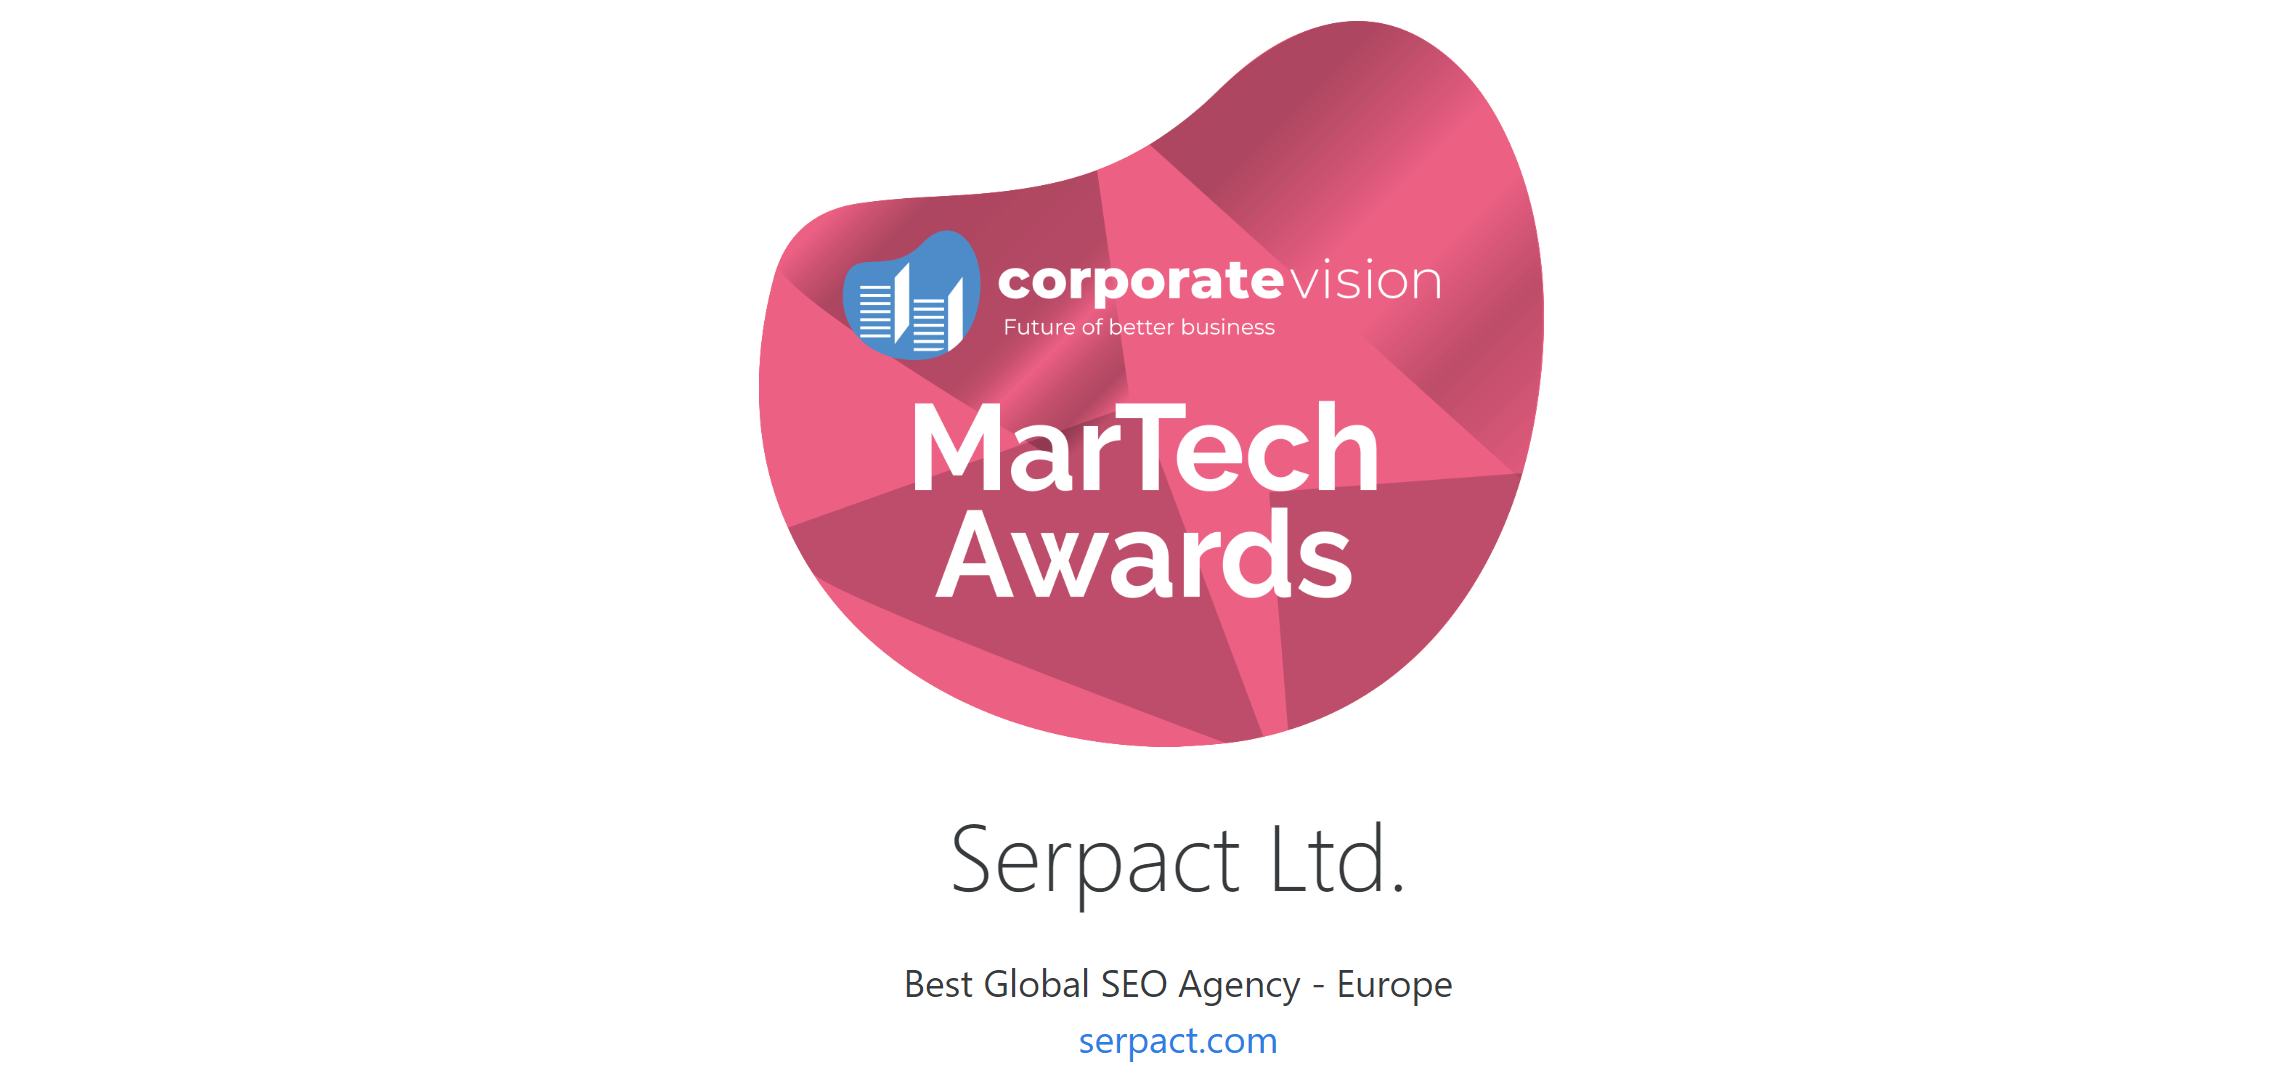 MarTech Awards-Best Global SEO